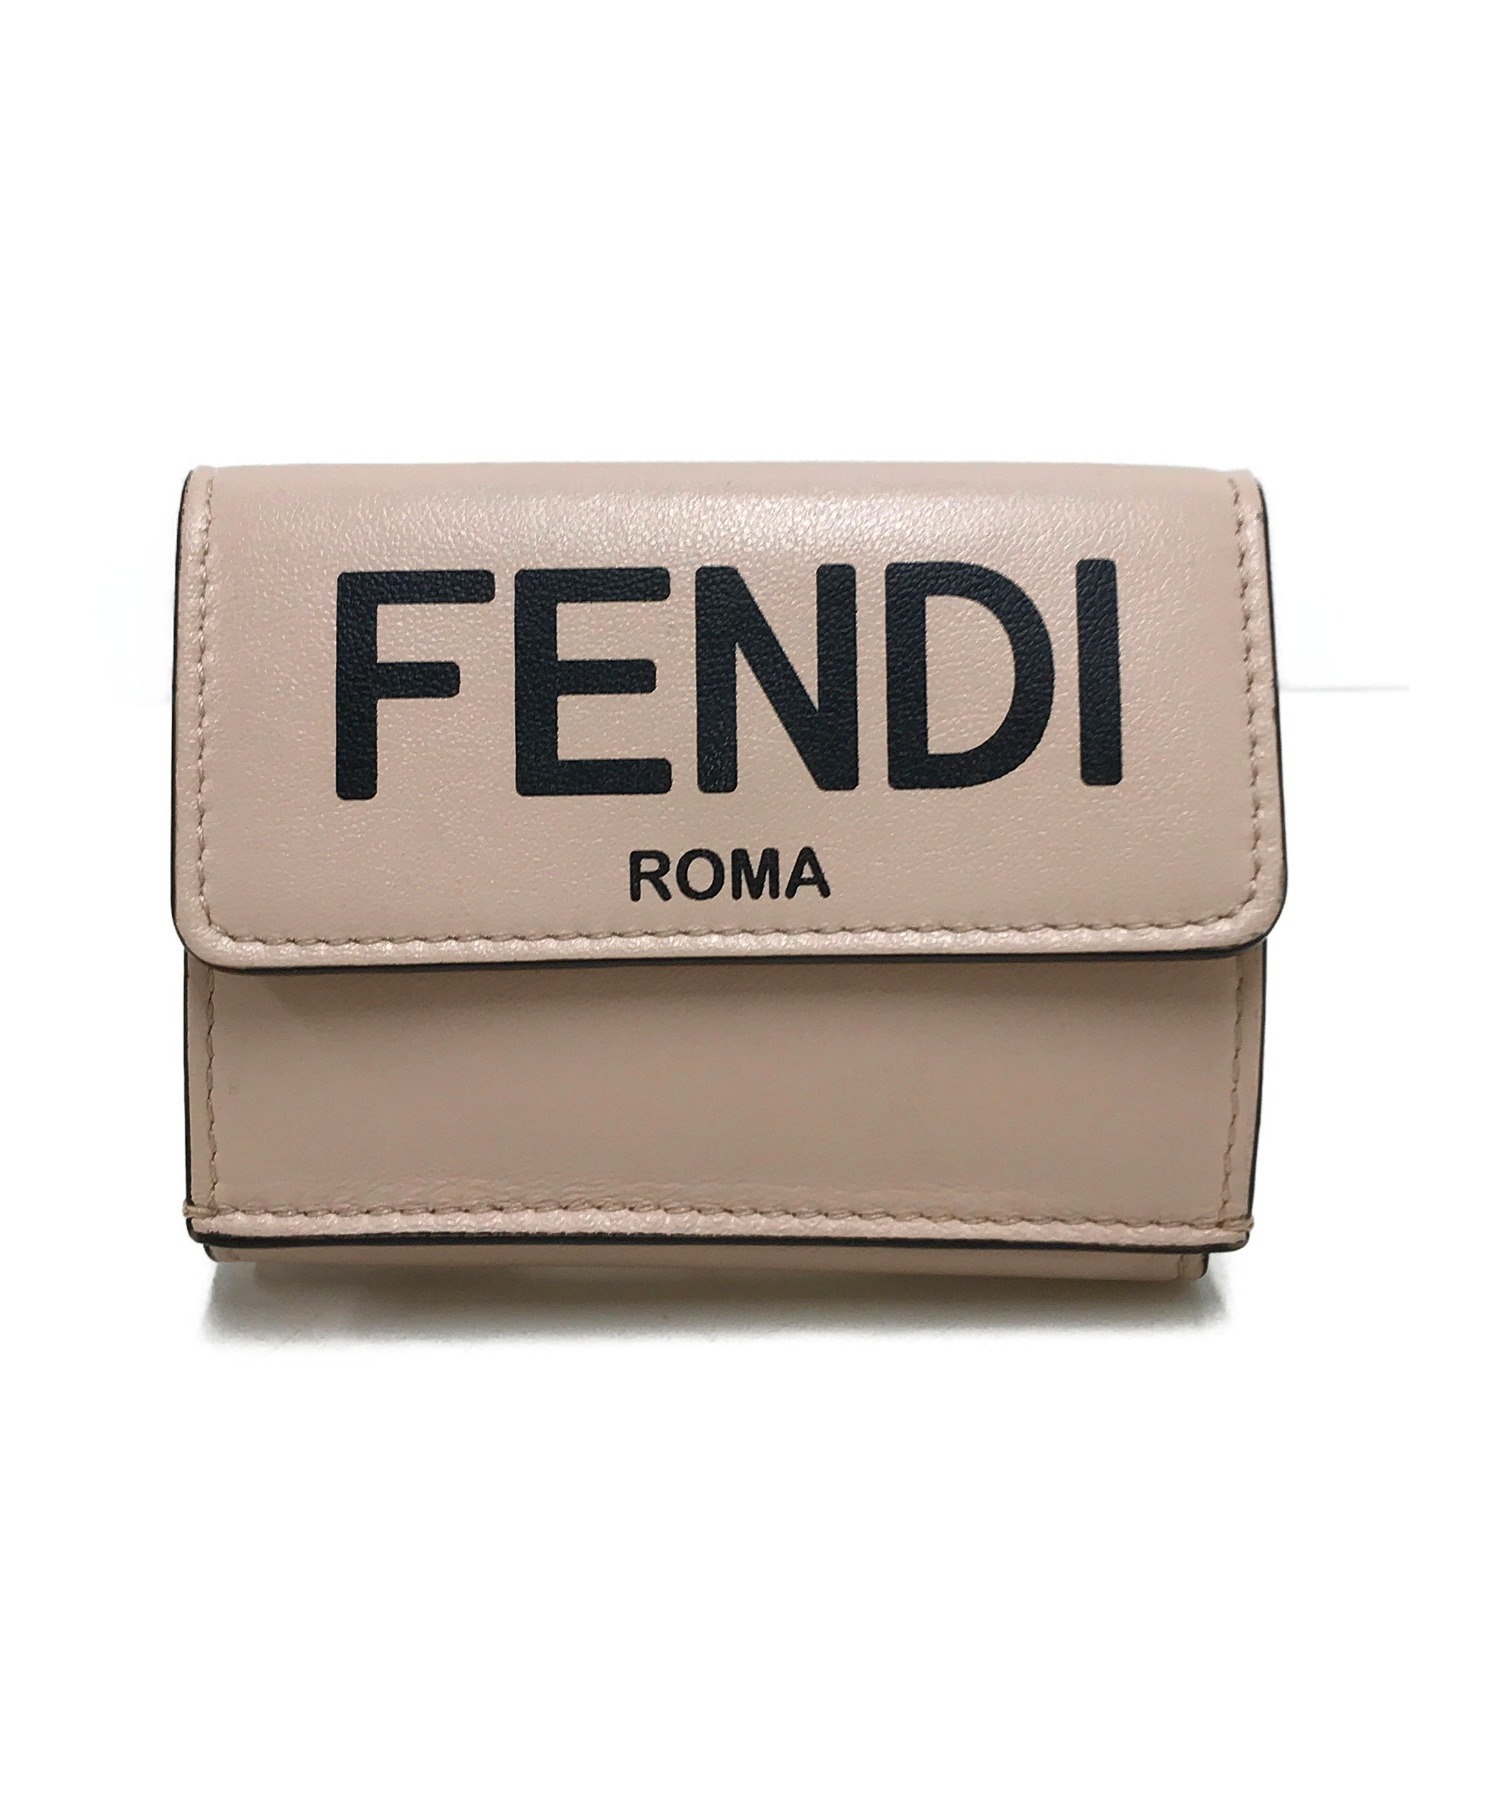 FENDI ROMA (フェンディローマ) 2つ折り財布 ピンク